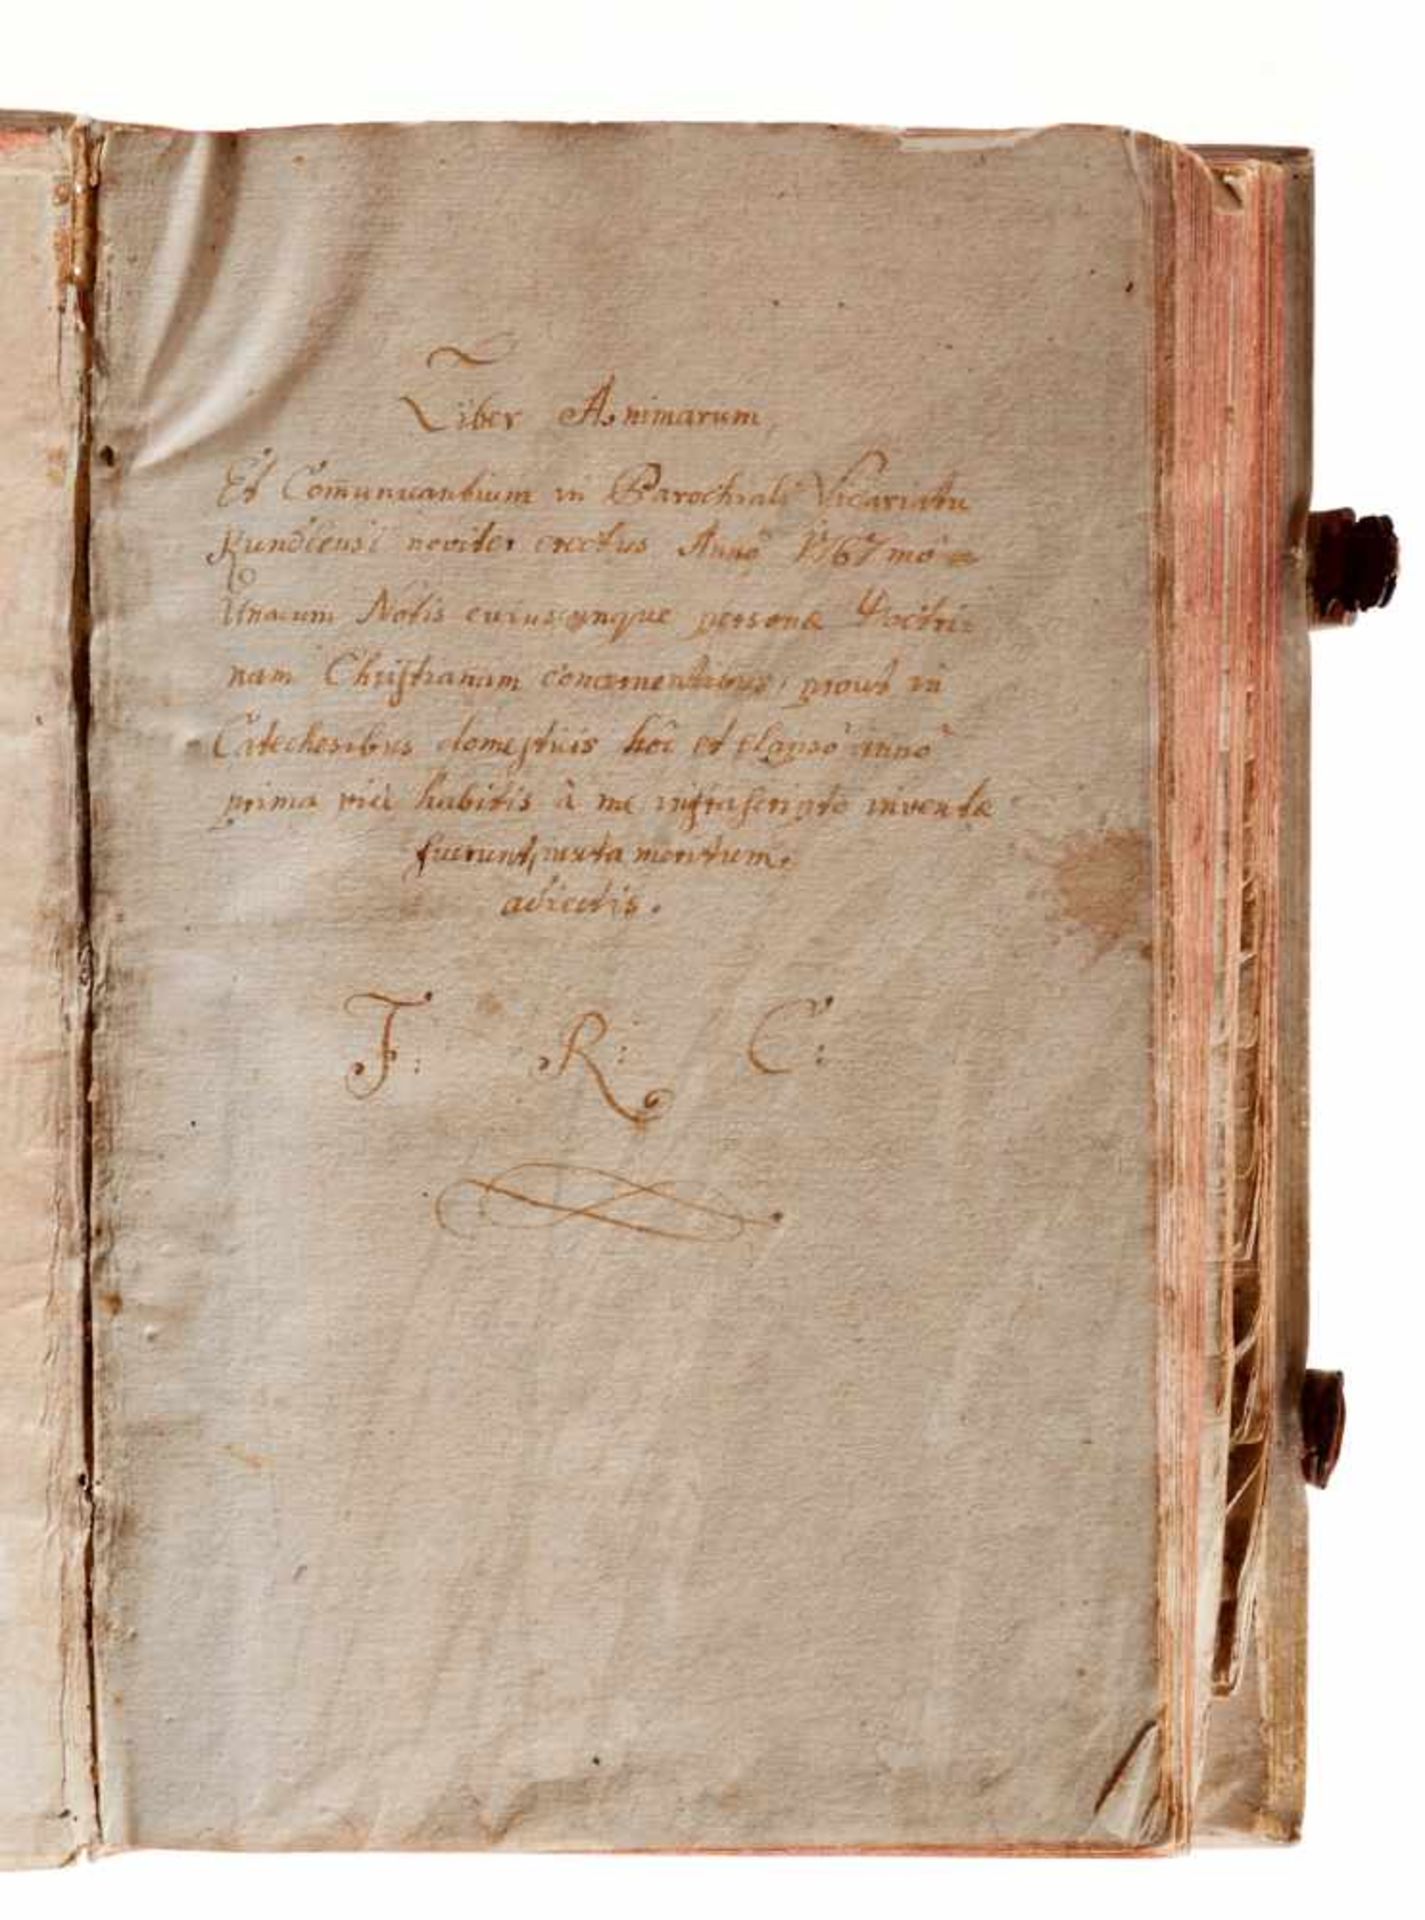 Kundl - Liber animarum -Lateinische und deutsche Handschrift auf Papier. Dat. Kundl (Tirol), 1767- - Bild 2 aus 3